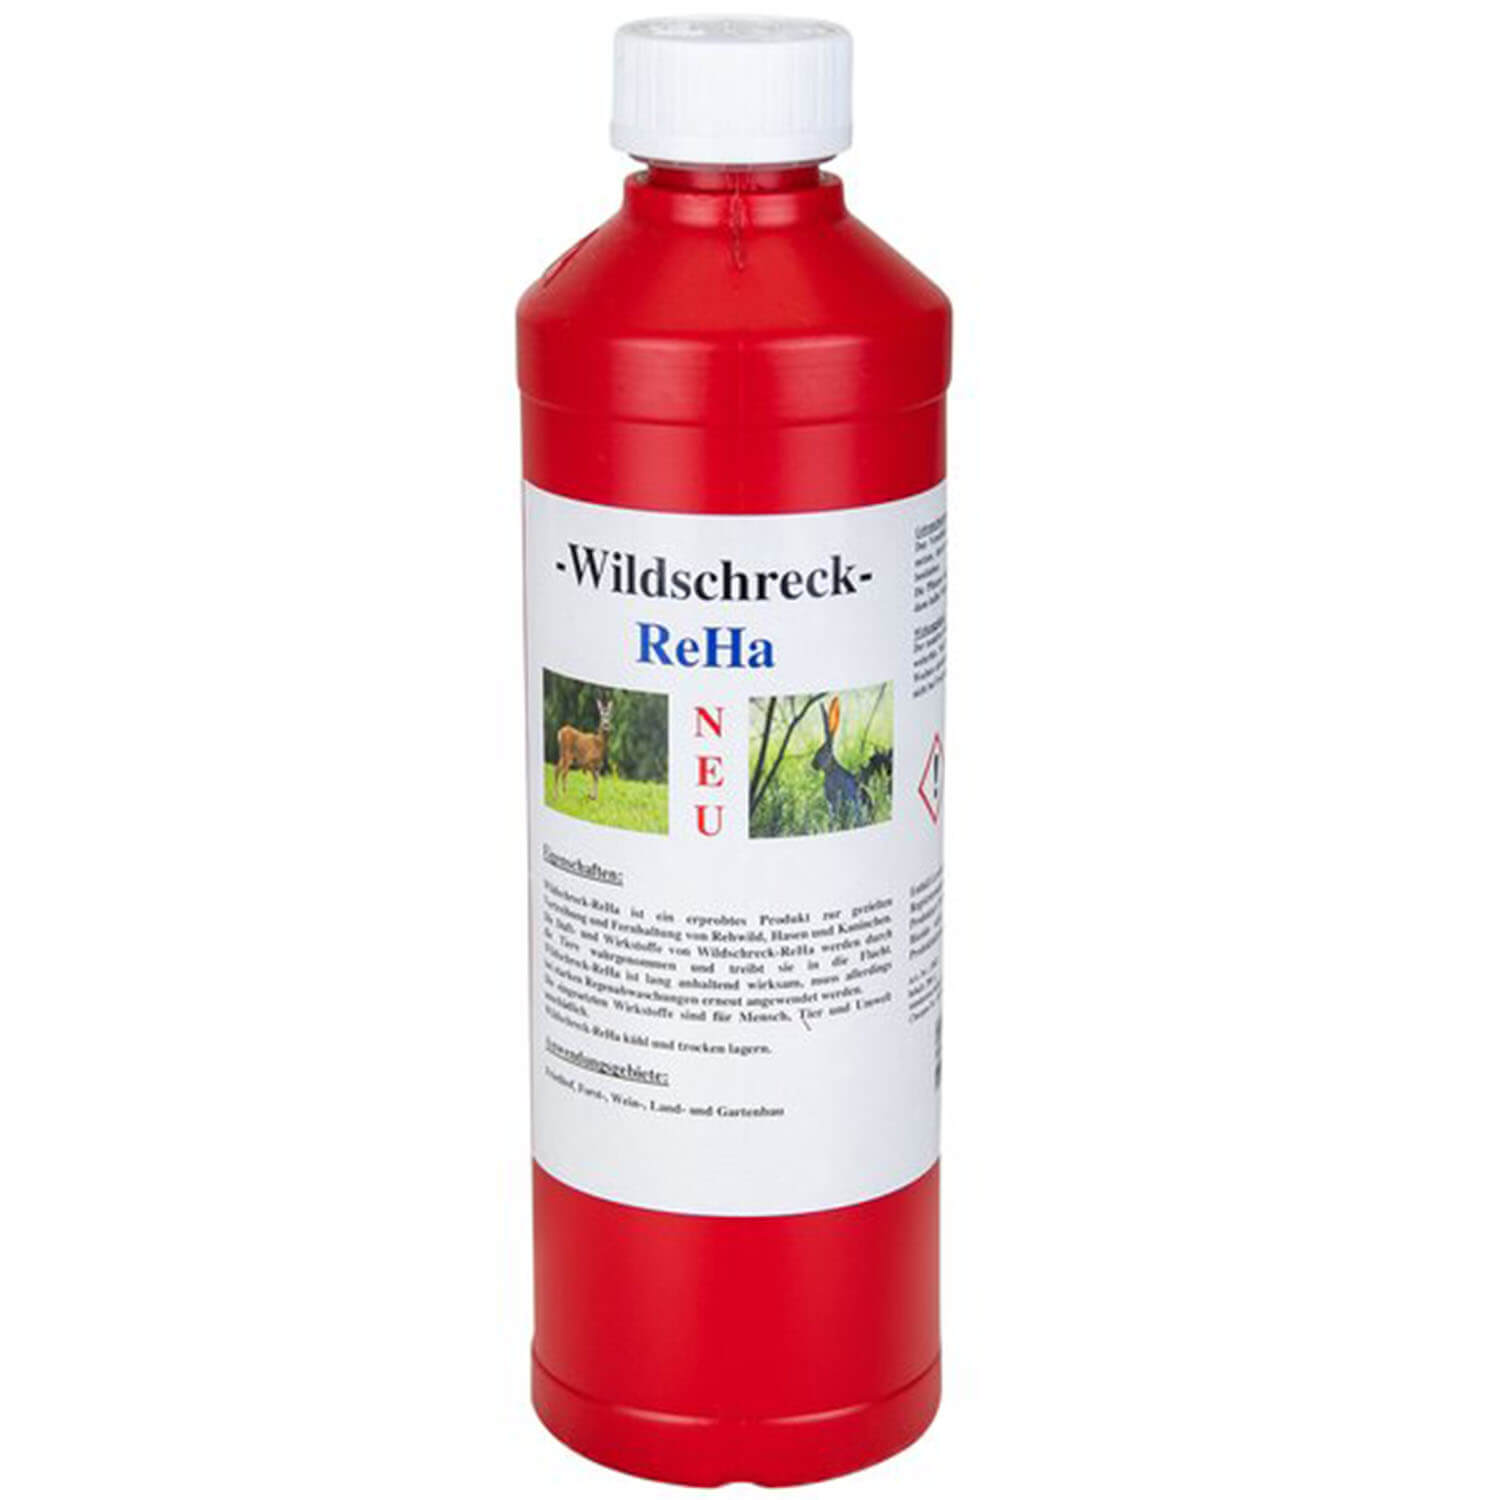 Wildschreck bottle reha 200g